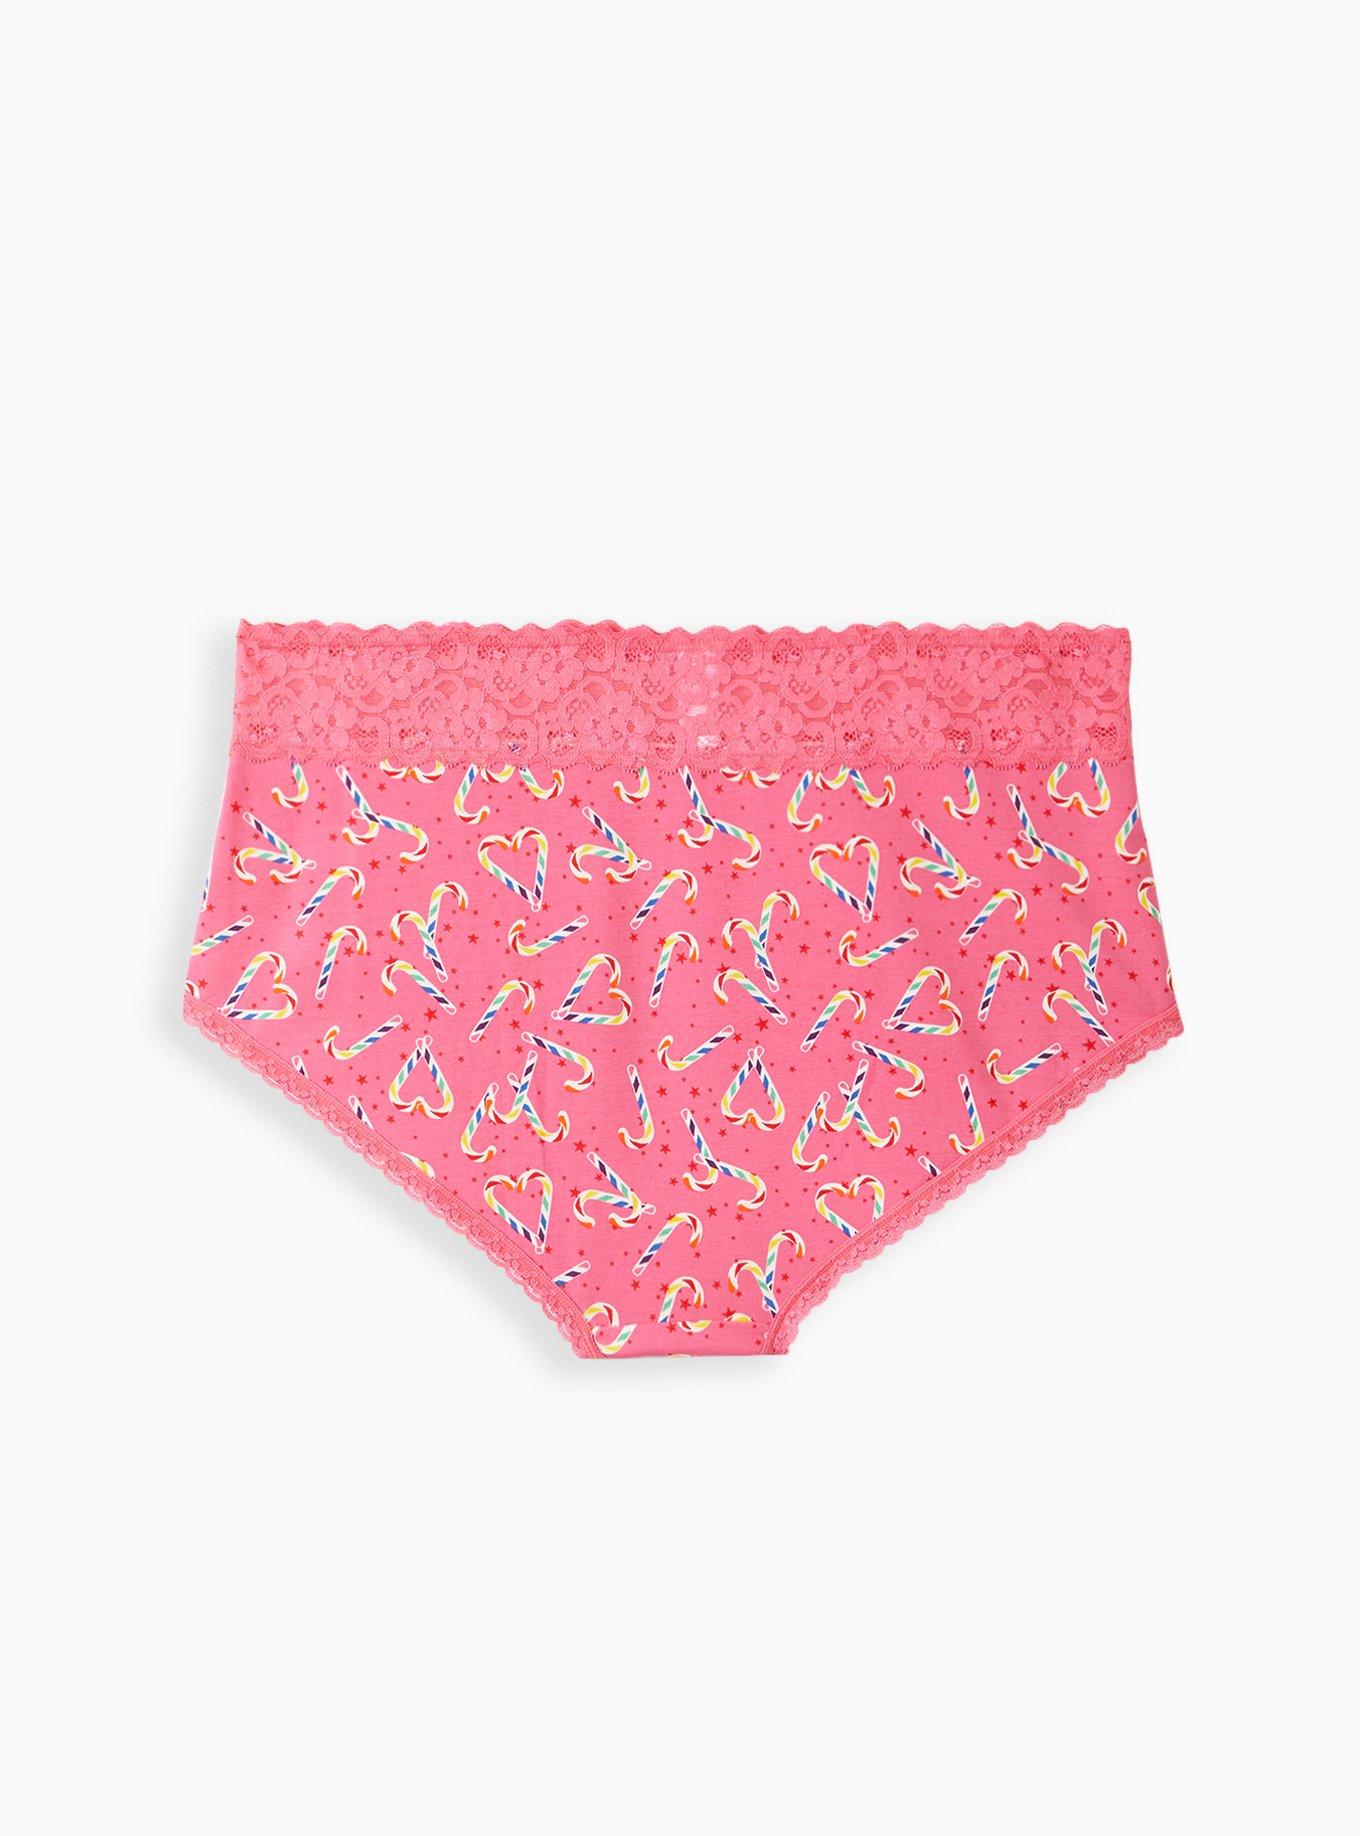 Candy Cane Brief Underwear - Spencer's